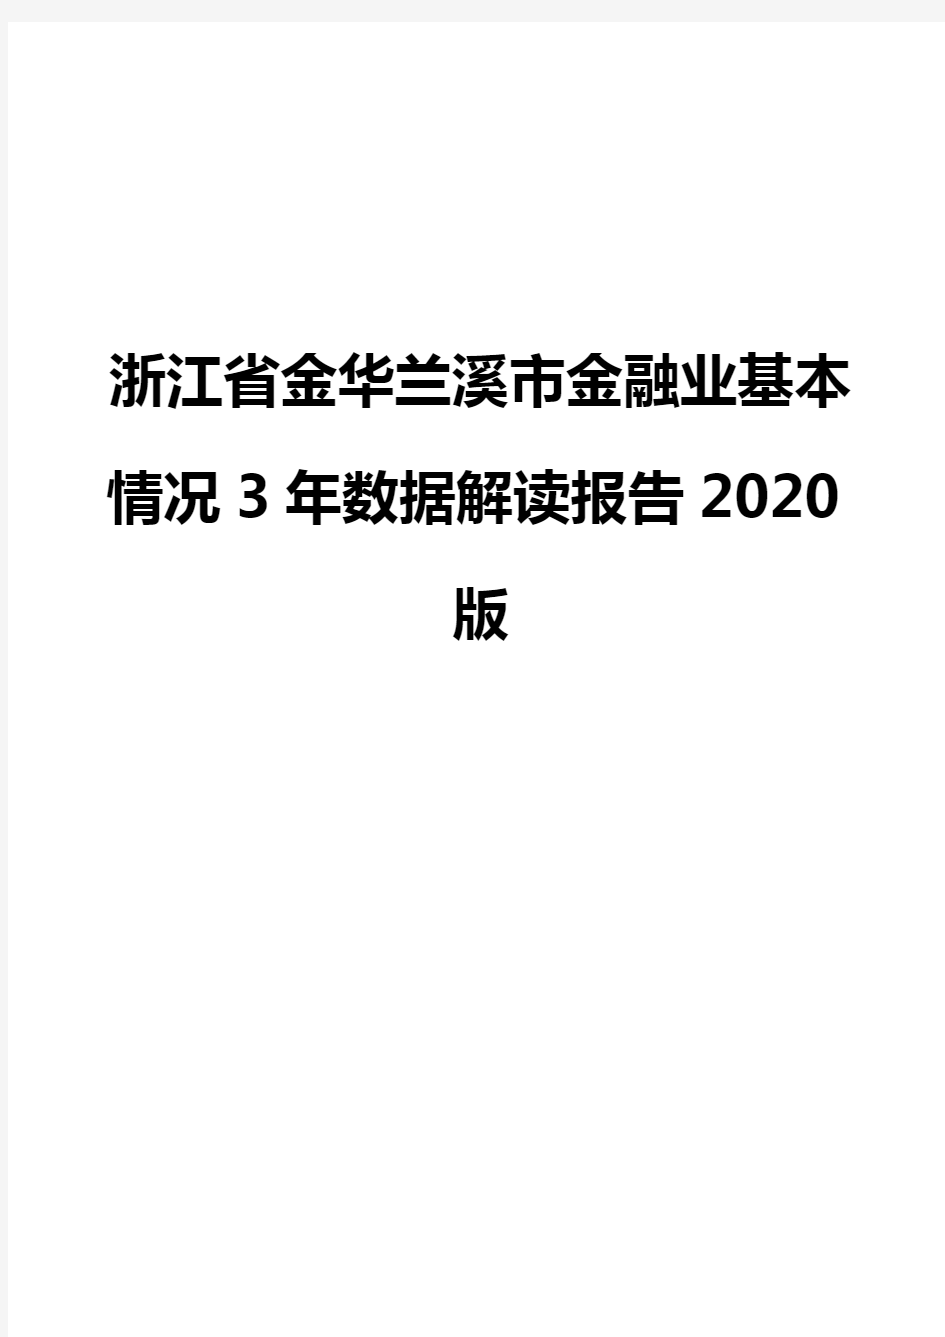 浙江省金华兰溪市金融业基本情况3年数据解读报告2020版